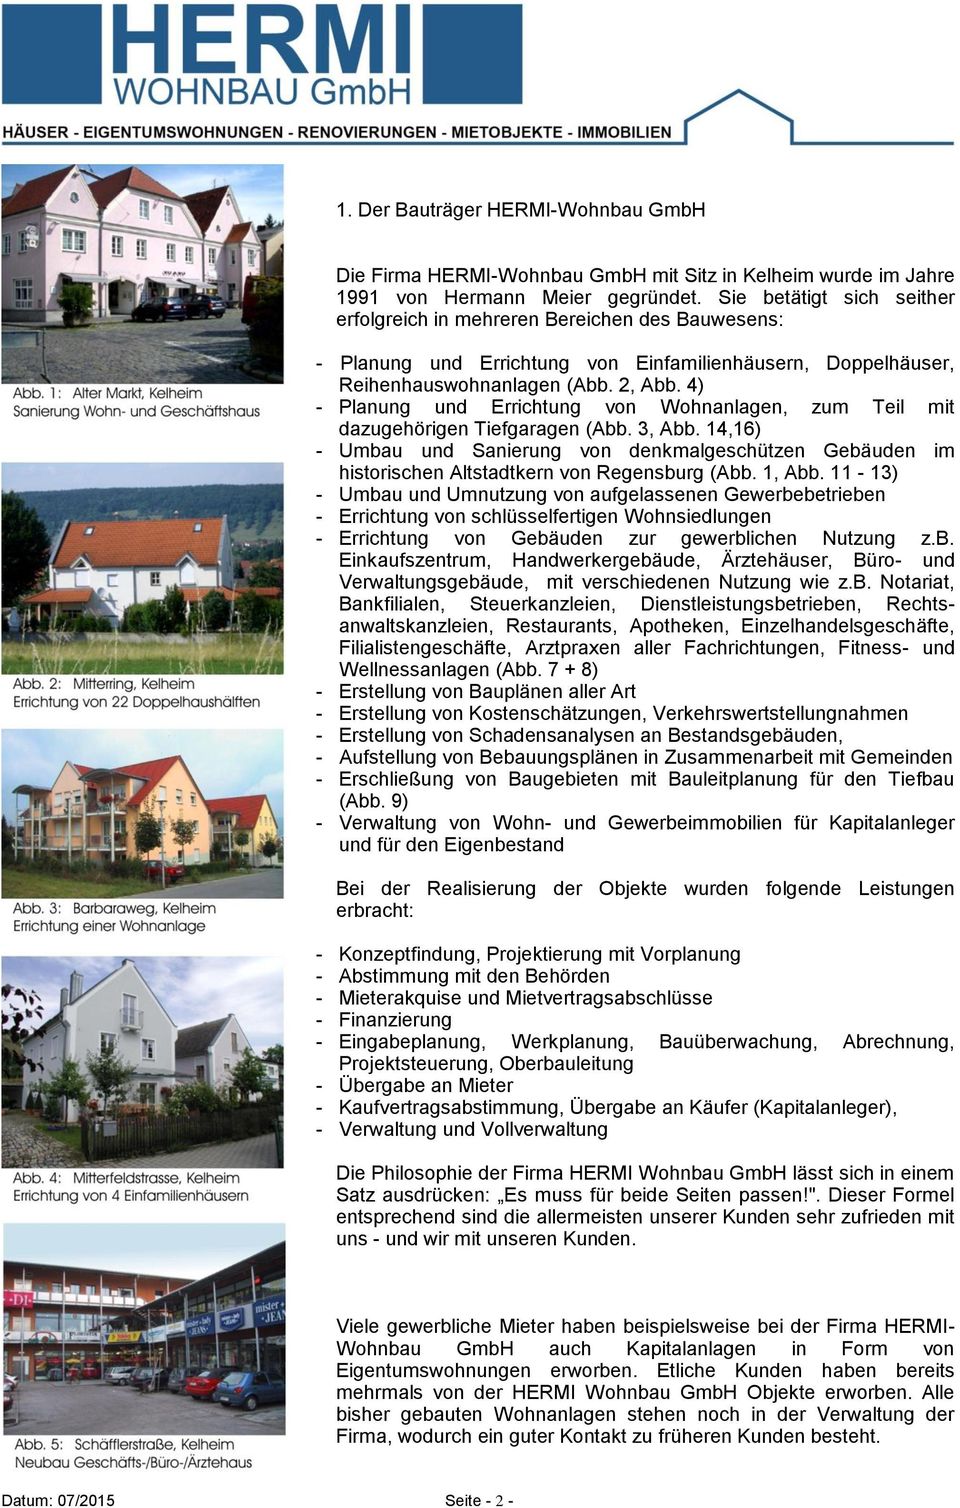 4) - Planung und Errichtung von Wohnanlagen, zum Teil mit dazugehörigen Tiefgaragen (Abb. 3, Abb.